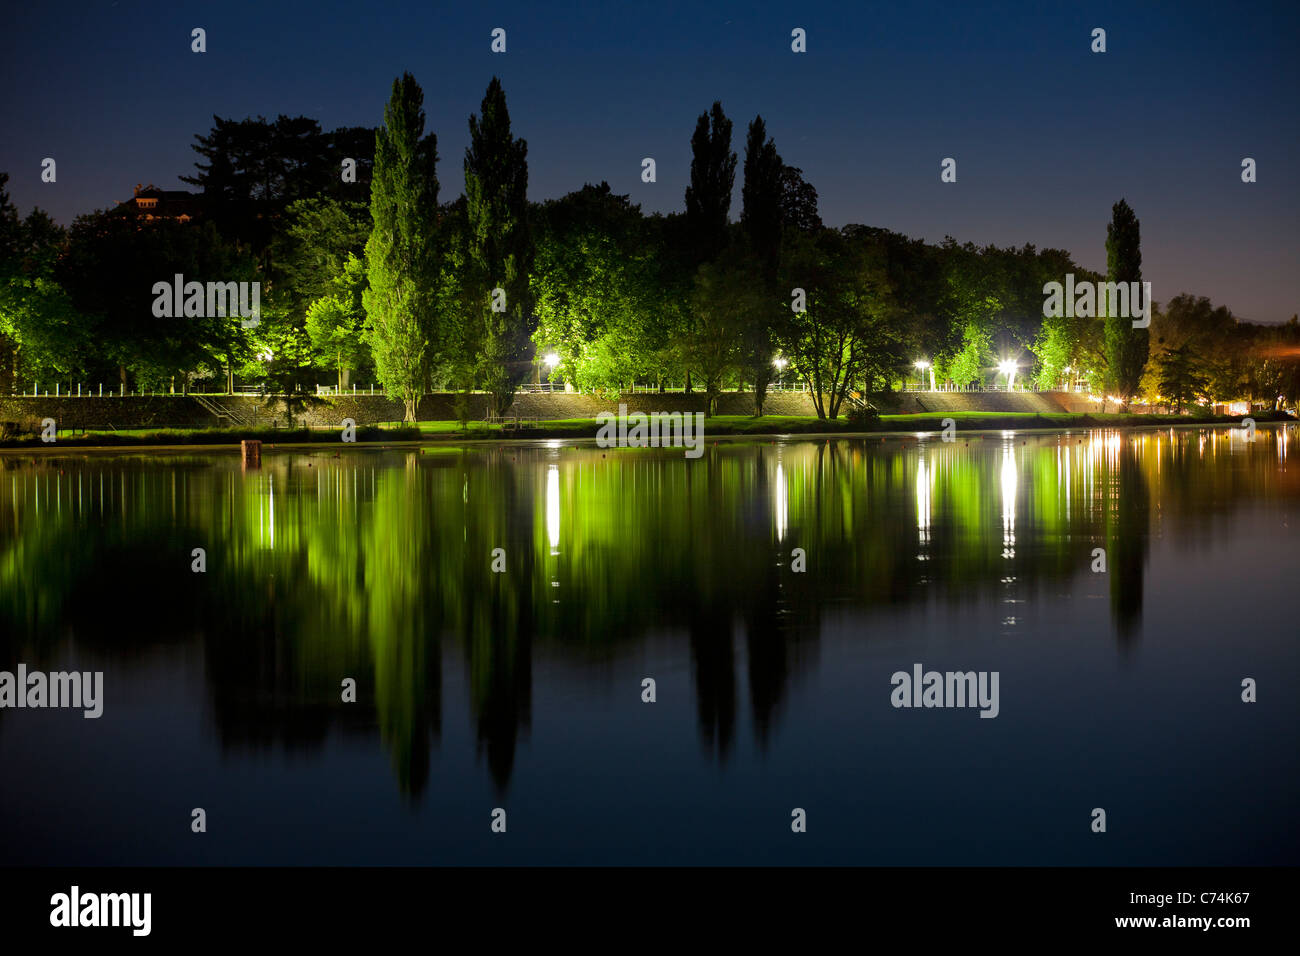 Di notte, il lago Allier diritto bancario e il Napoleone III Park (Vichy). La Rive Droite du Lac d'Allier et le parc Napoléon III. Foto Stock